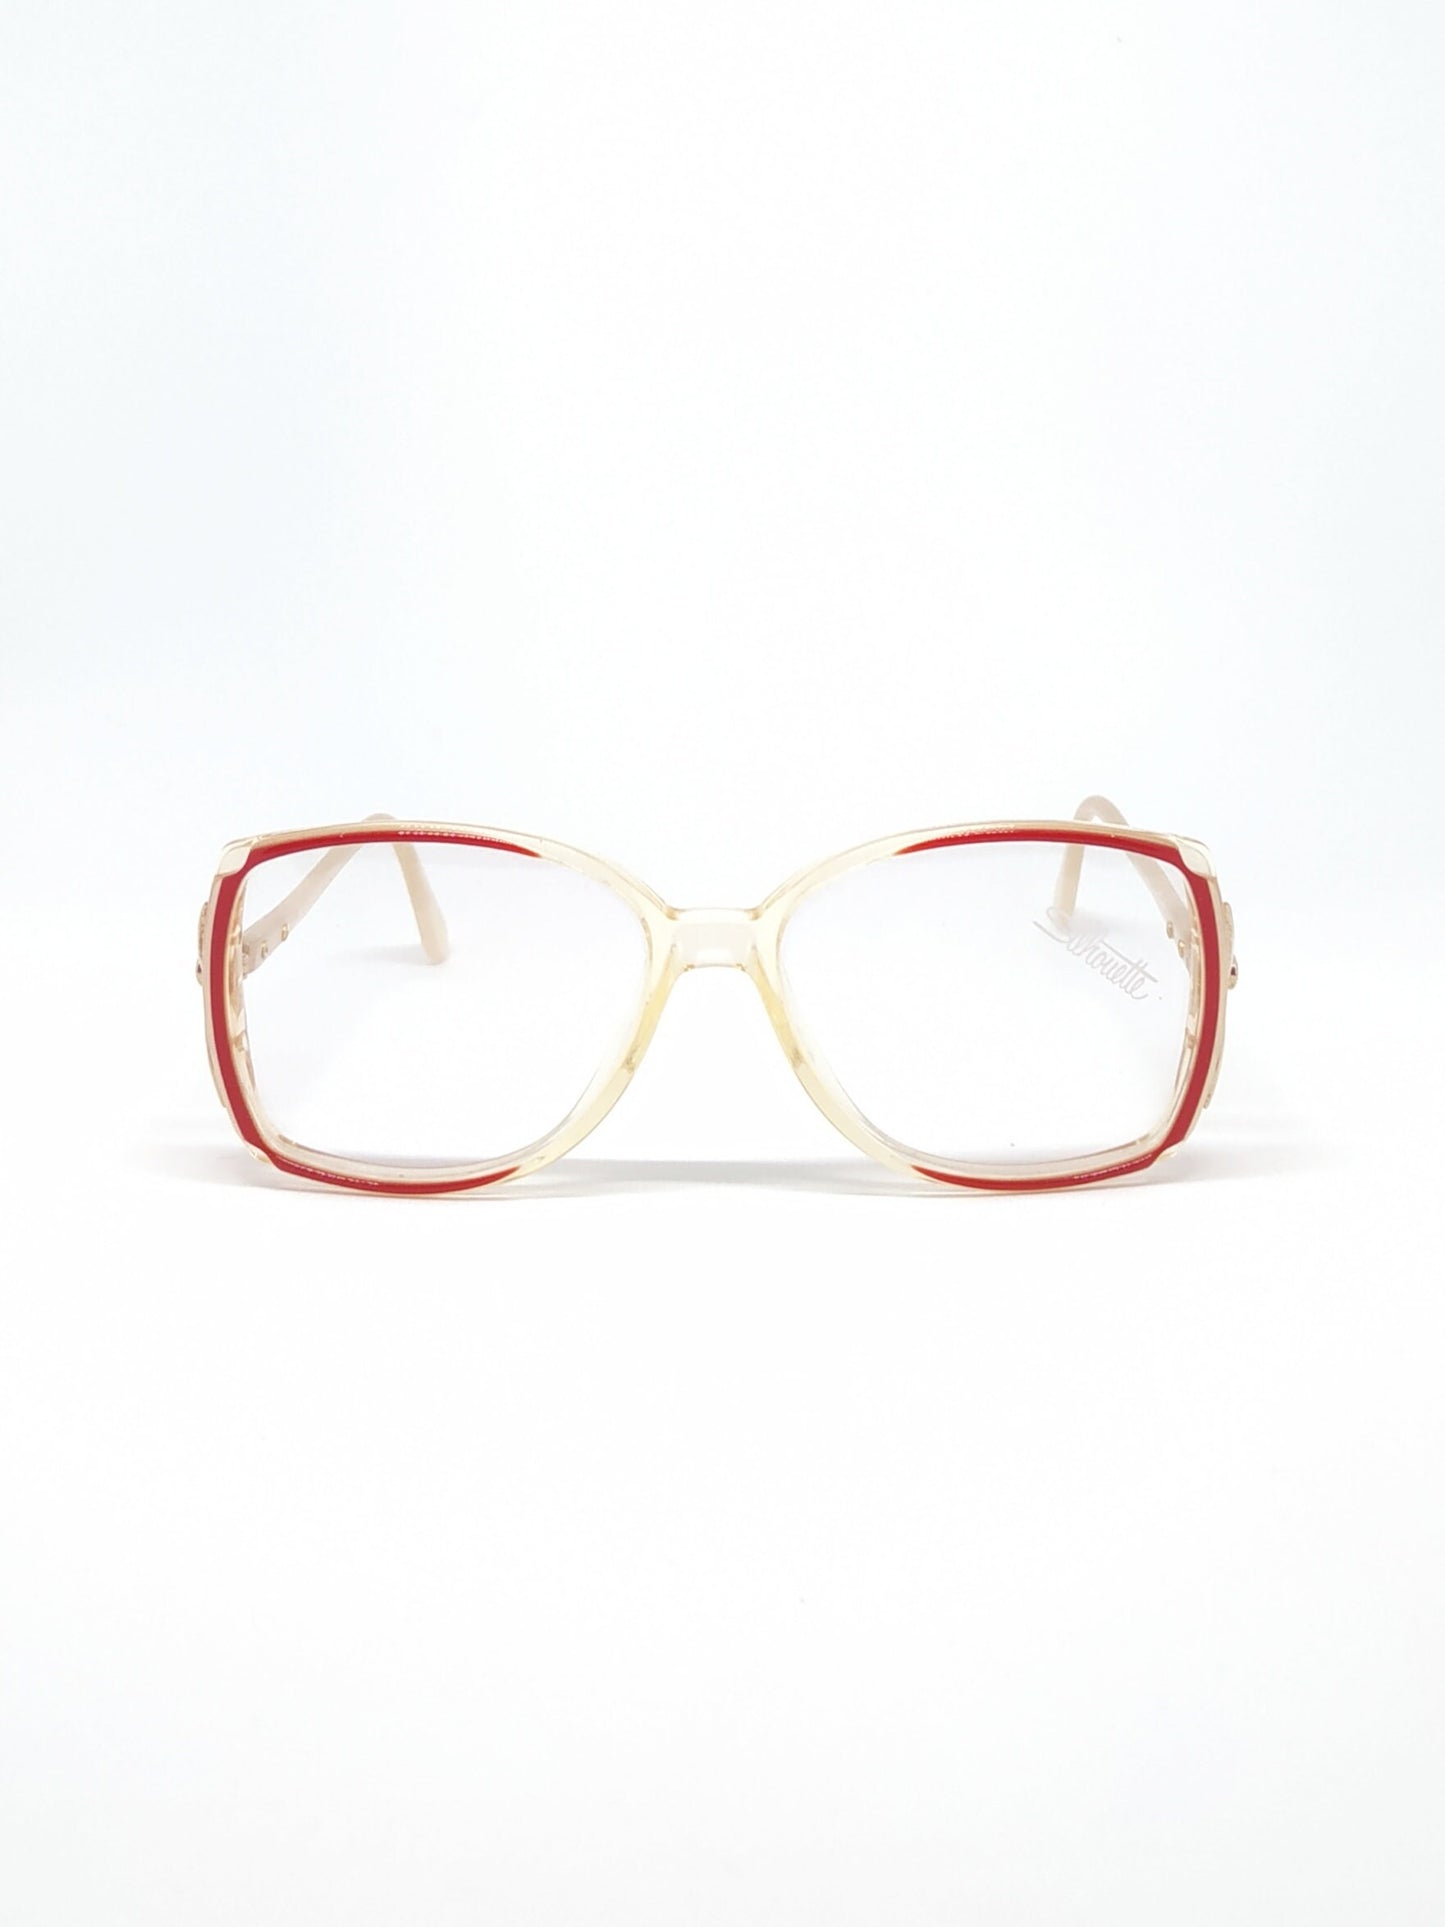 Vintage New old stock eyeglasses frames June